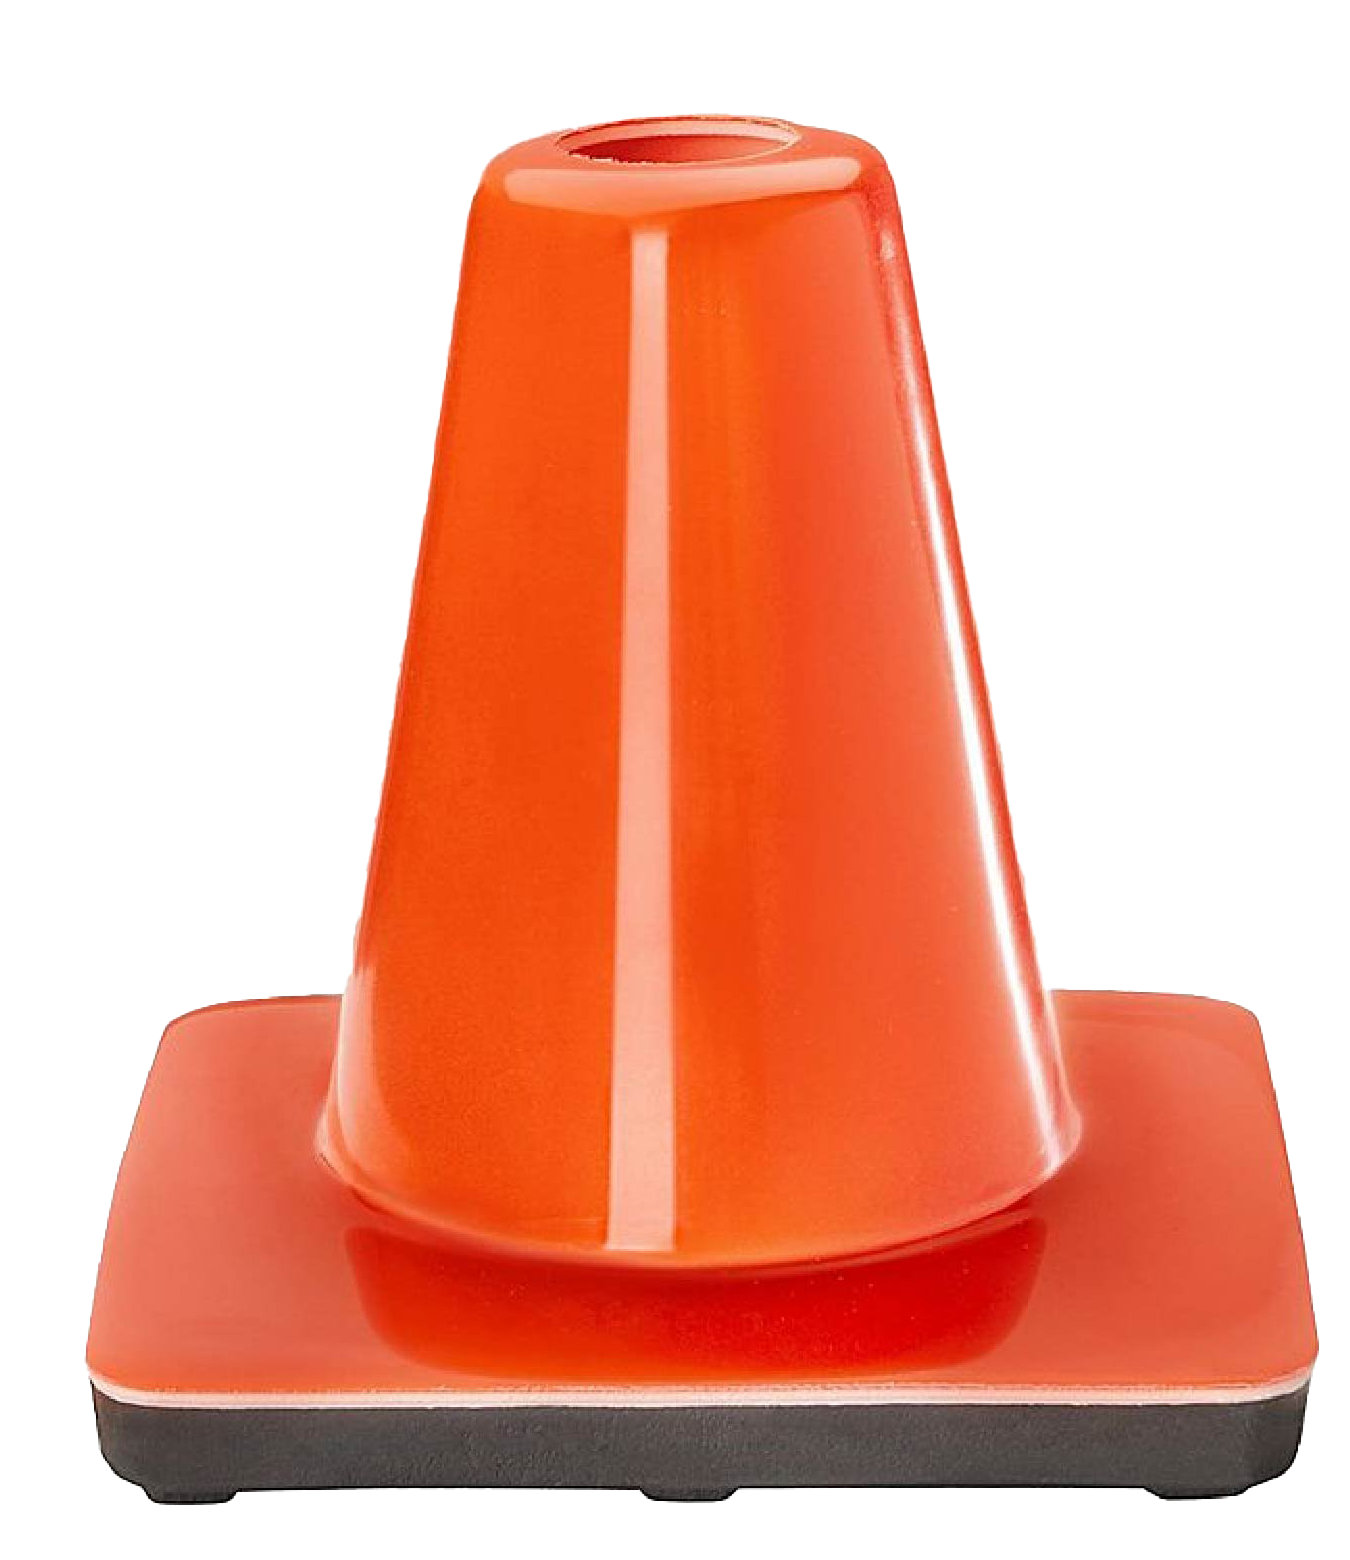 Imagem de alta qualidade de cone de tráfego laranja